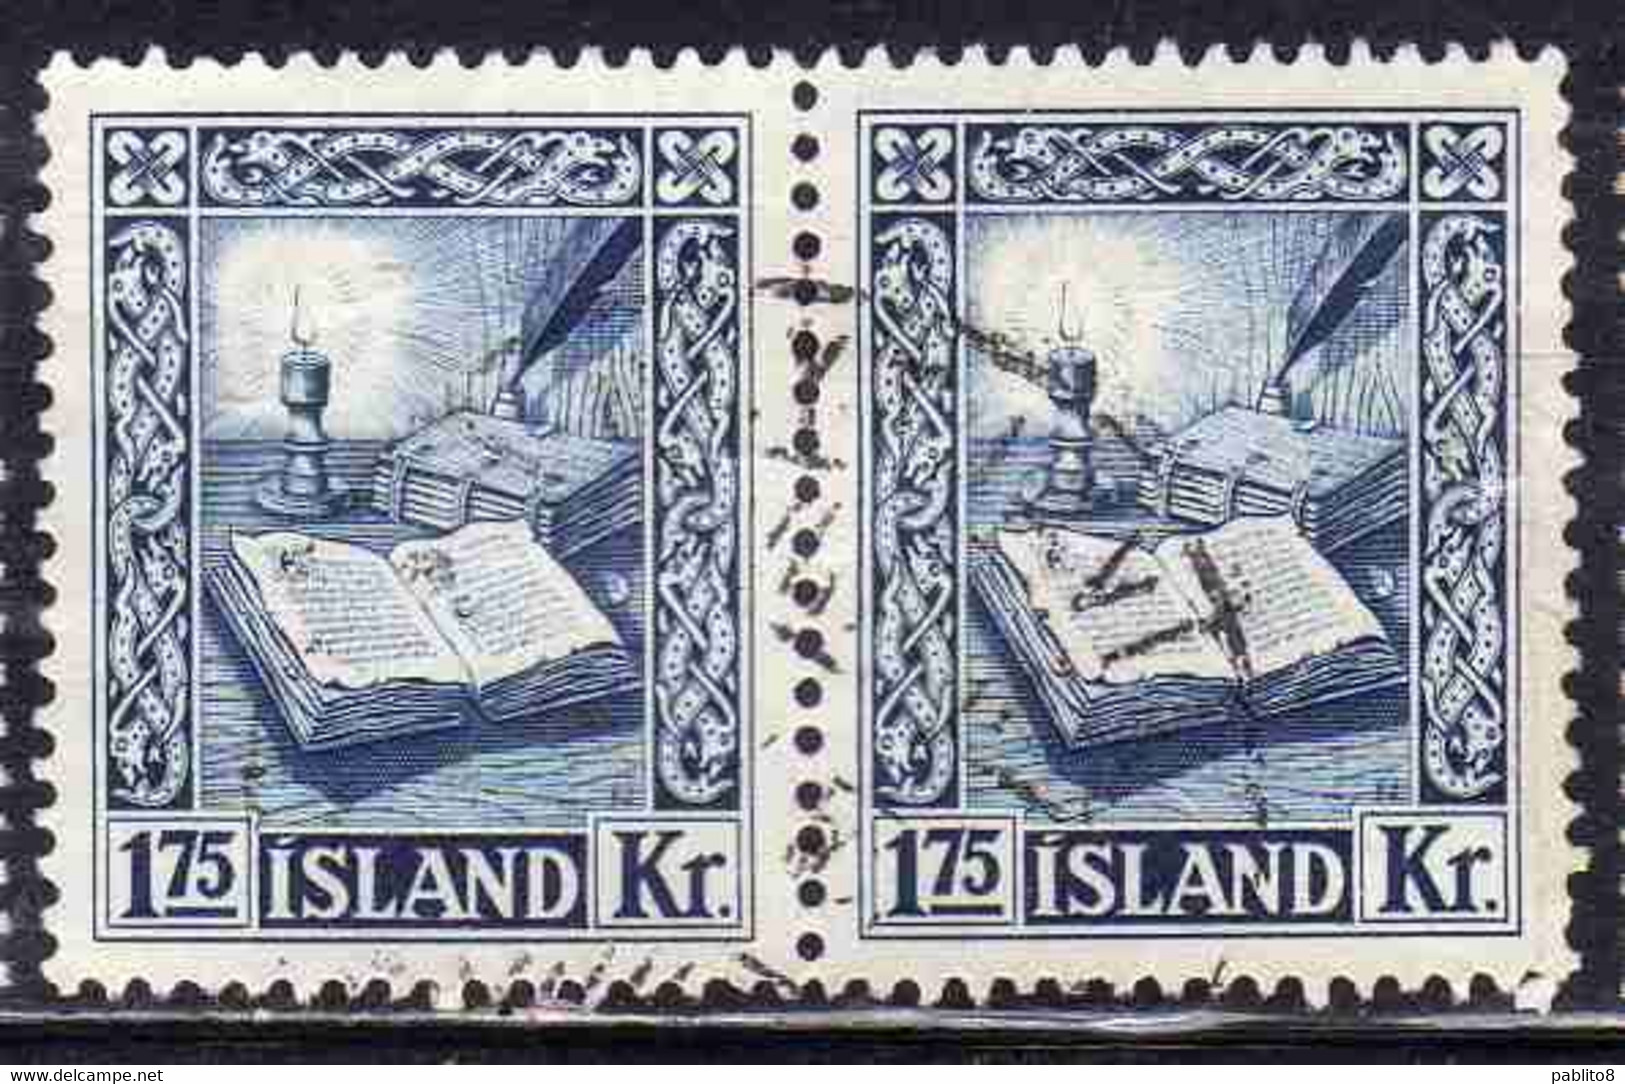 ISLANDA ICELAND ISLANDE 1953 REJKJABOK 1.75k USED USATO OBLITERE' - Used Stamps